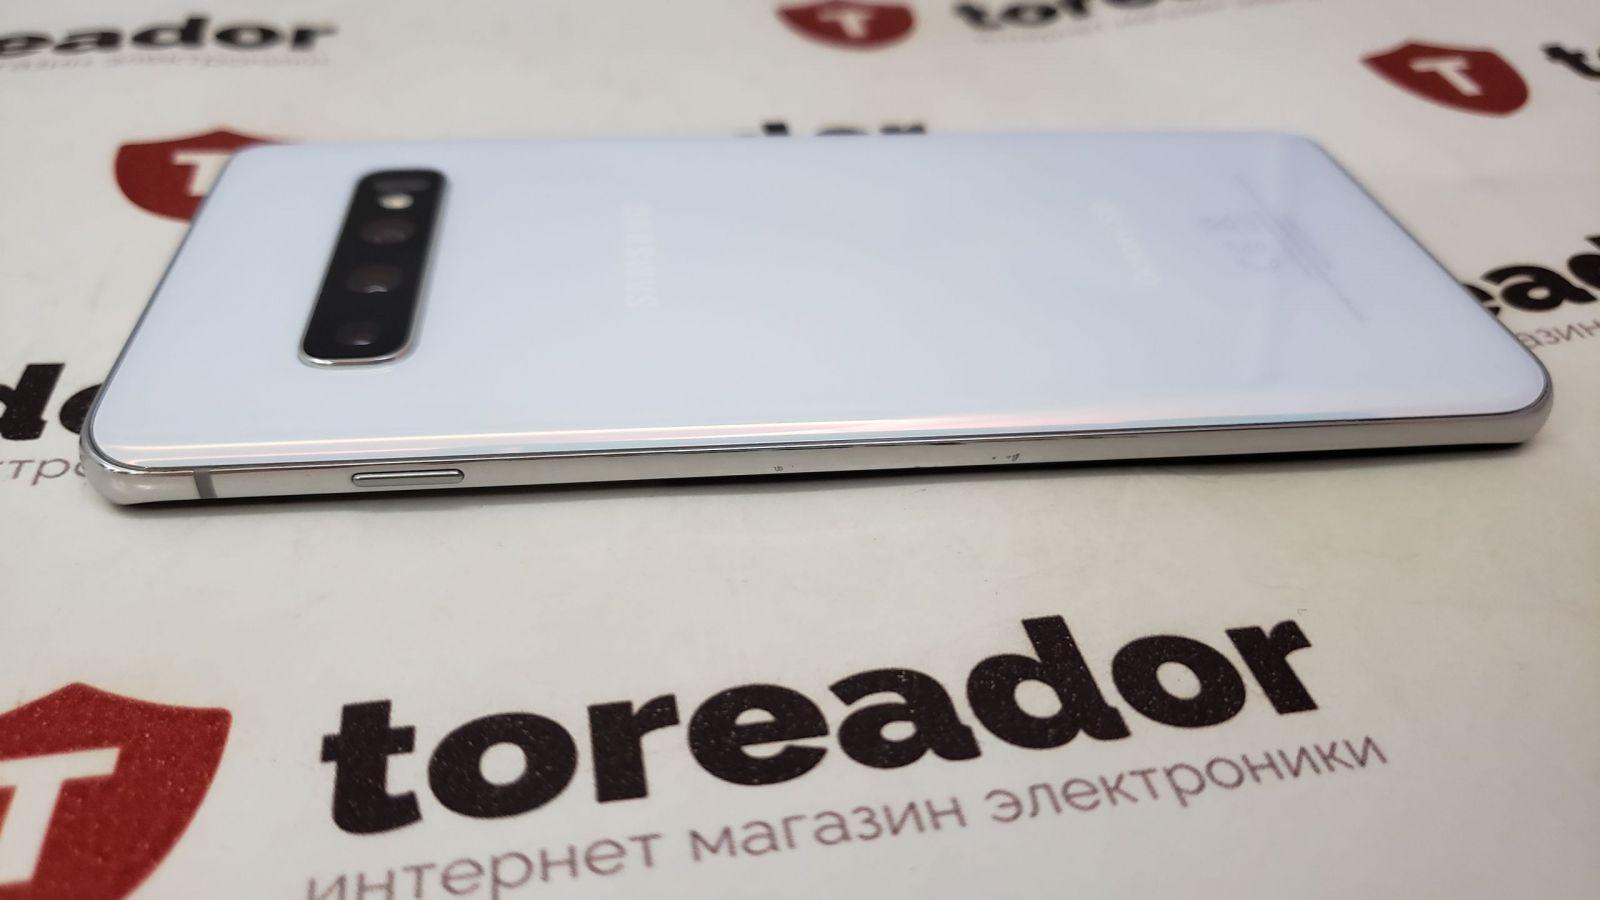 Samsung запустил продажи "керамической" версии смартфона Galaxy S10+ в России (20191022 100600 scaled)